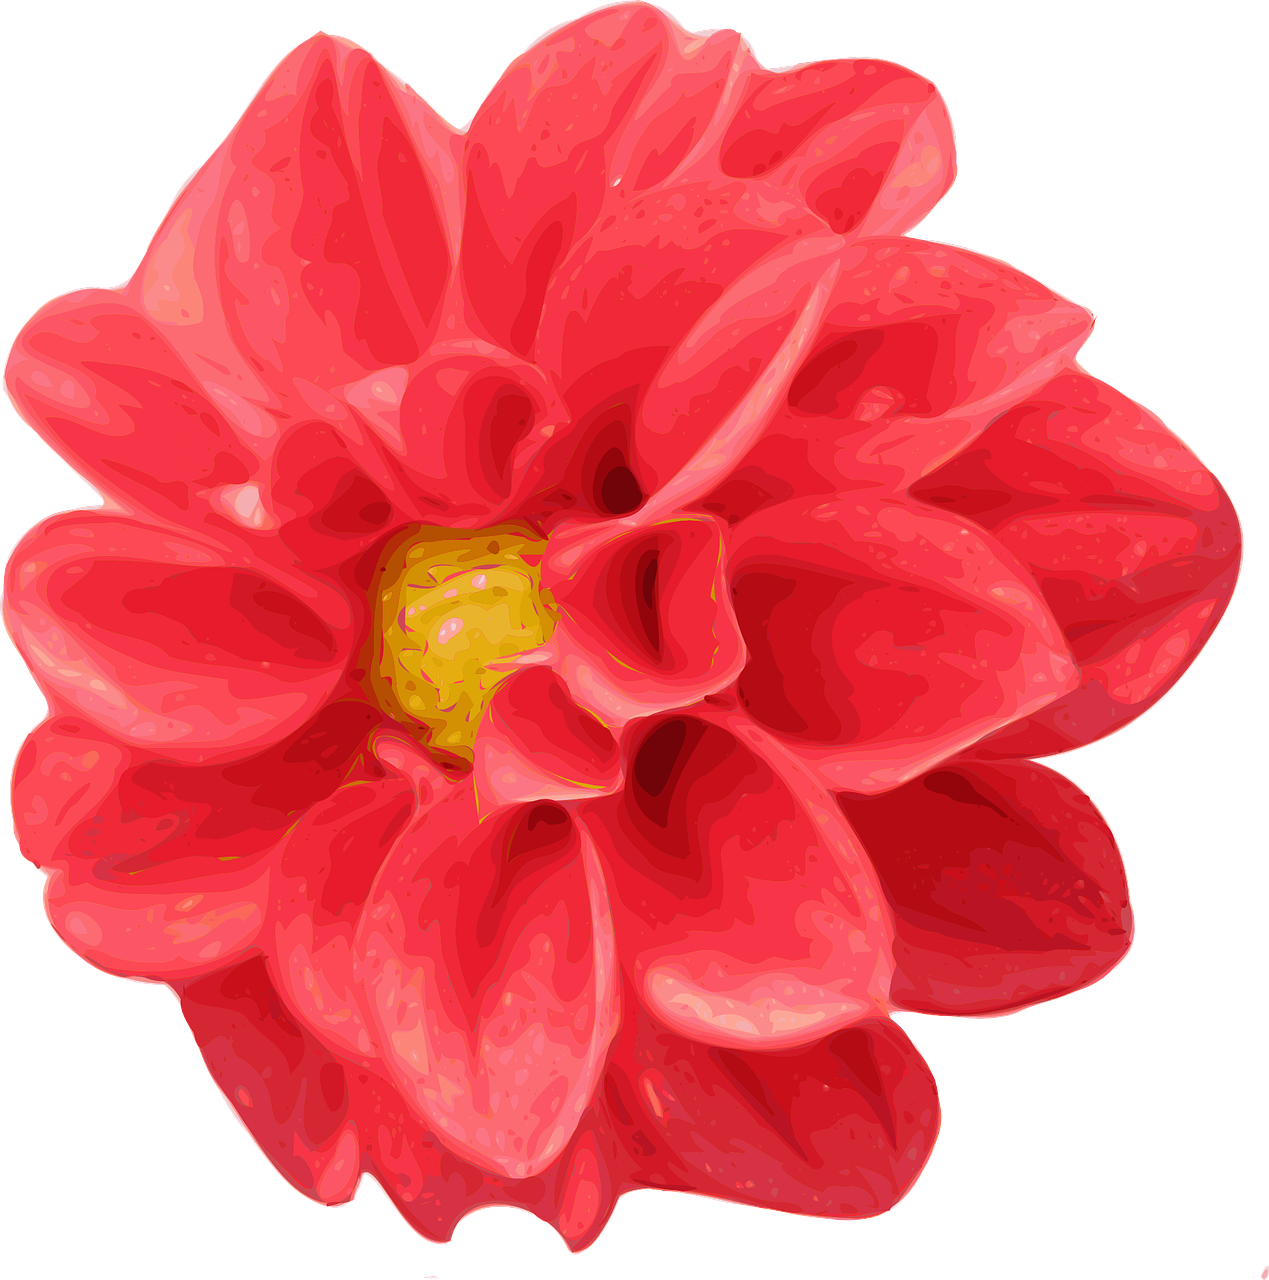 Chrysanthemen, Dahlien, rote Blumen